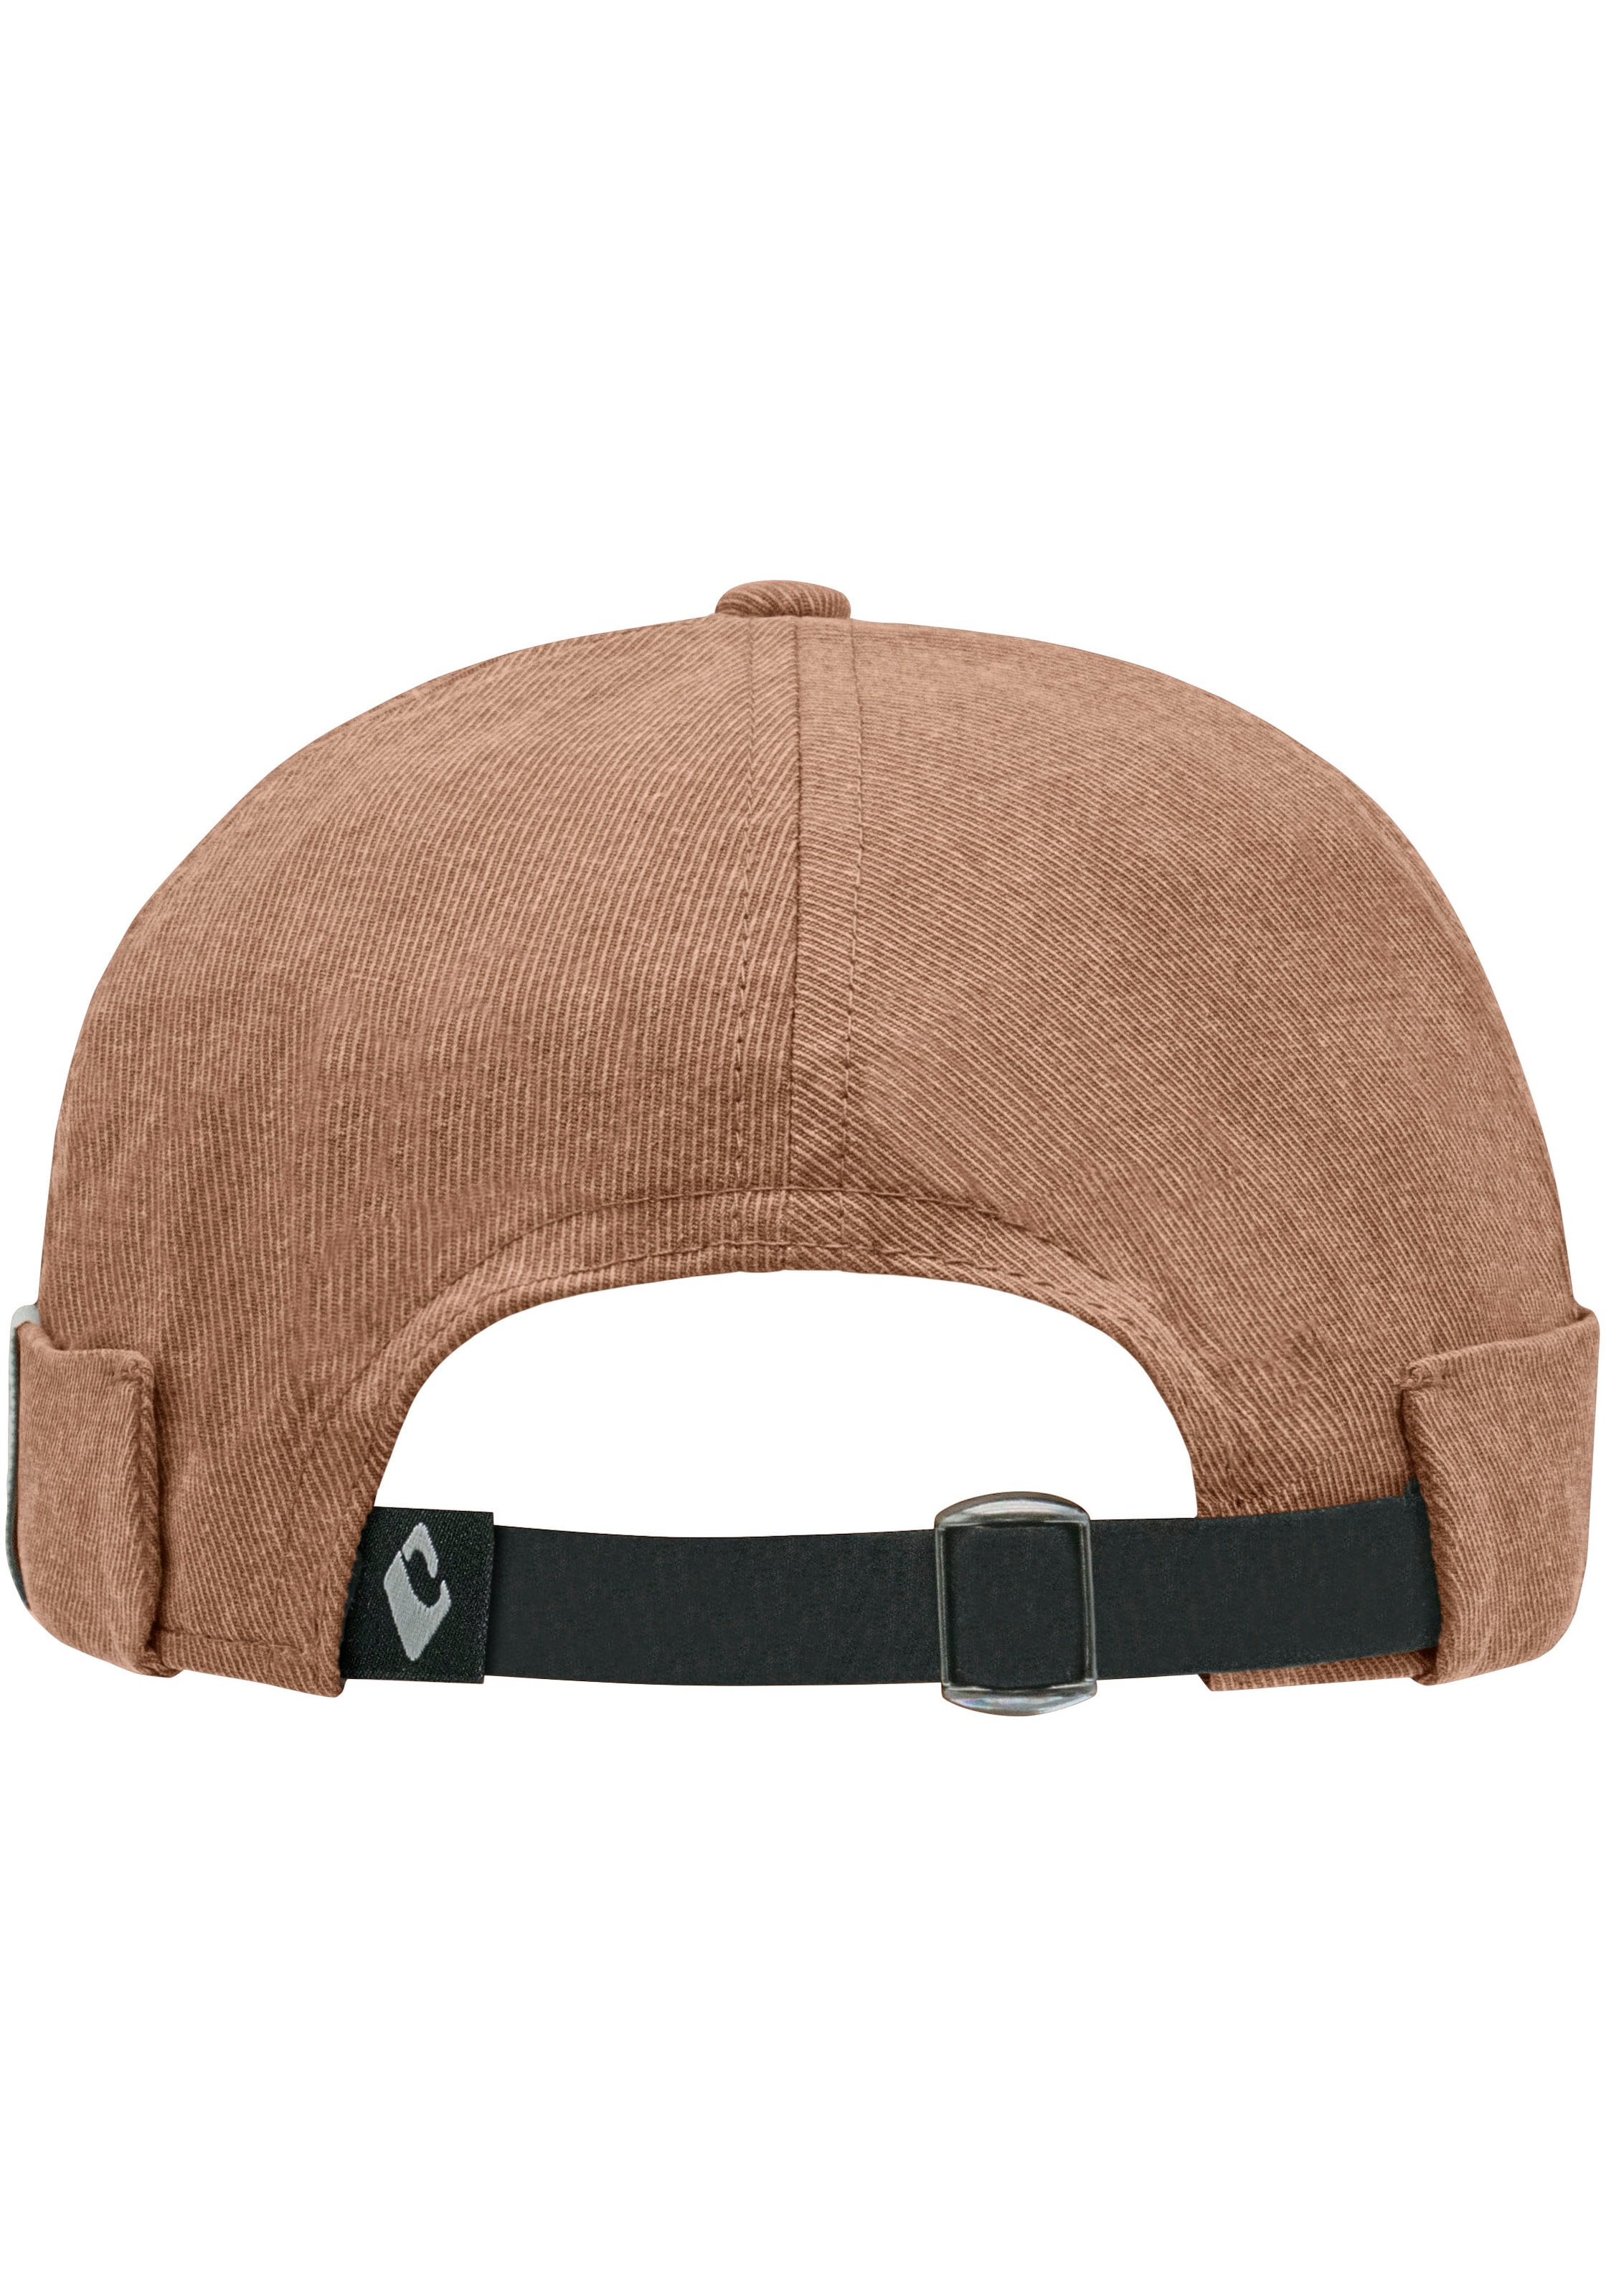 chillouts Flat Cap »Yao Hat«, bei Baumwolle, Reine | OTTO kaufen OTTO online Vintage-Look